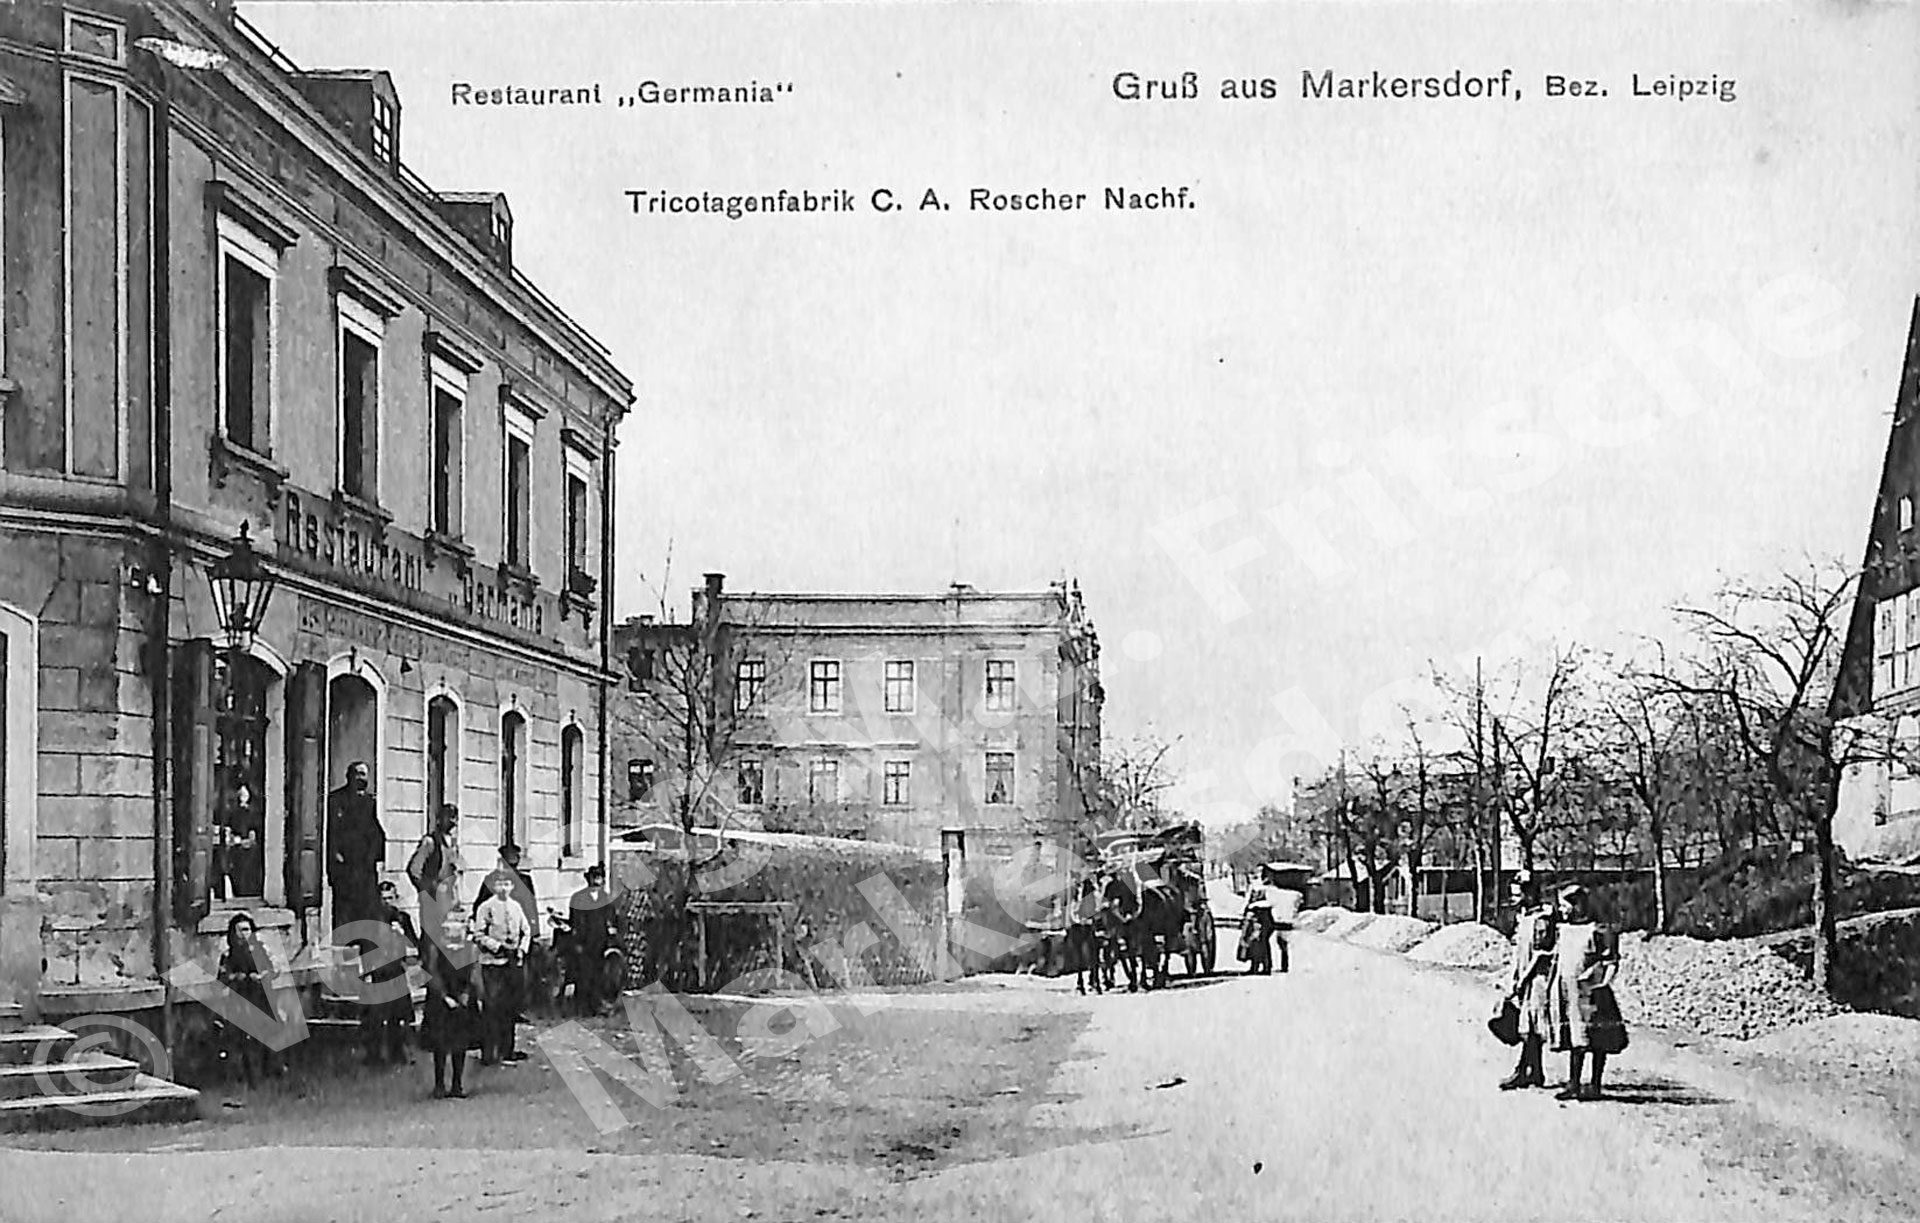 Postkarte Markersdorf Tricotagenfabrik C. A. Roscher Nachf. / Restaurant "Germania"